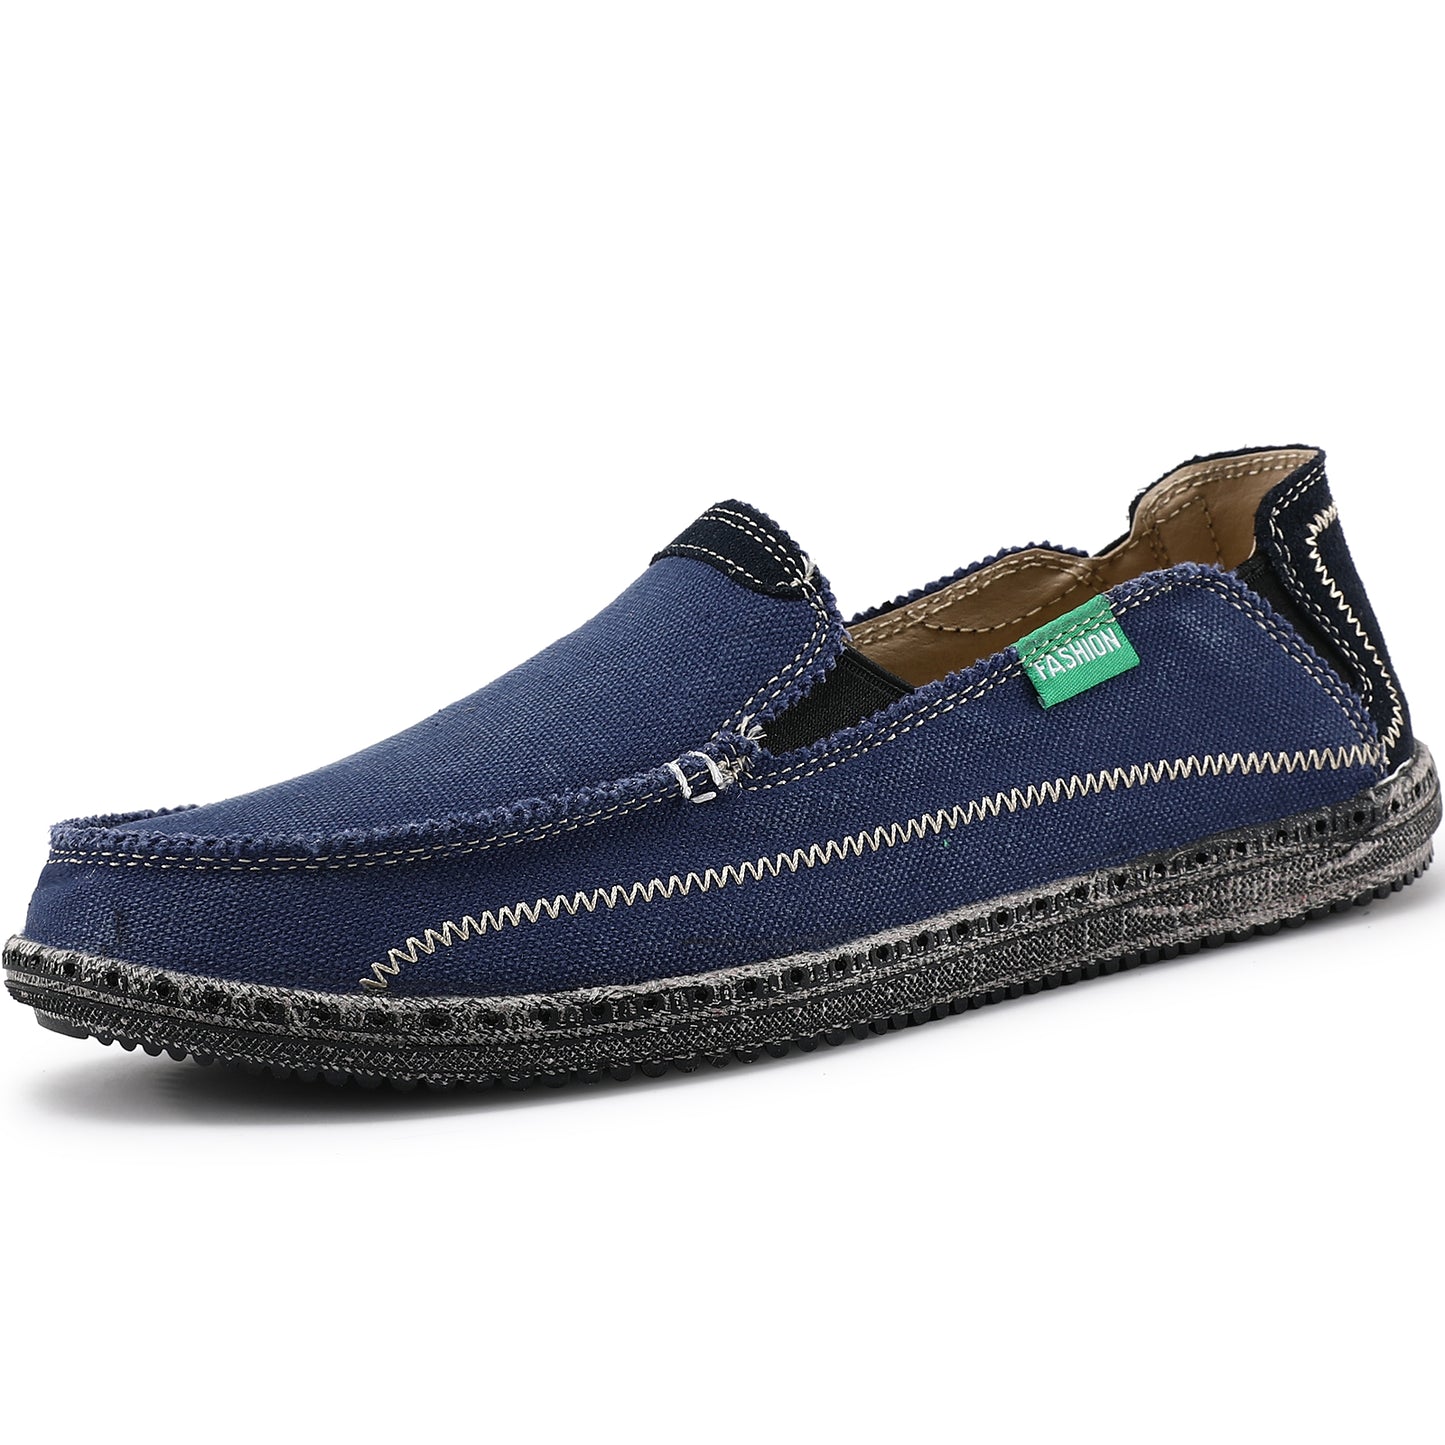 Men's Slip on Deck Shoes Canvas Loafer Vintage Flat Boat Shoes